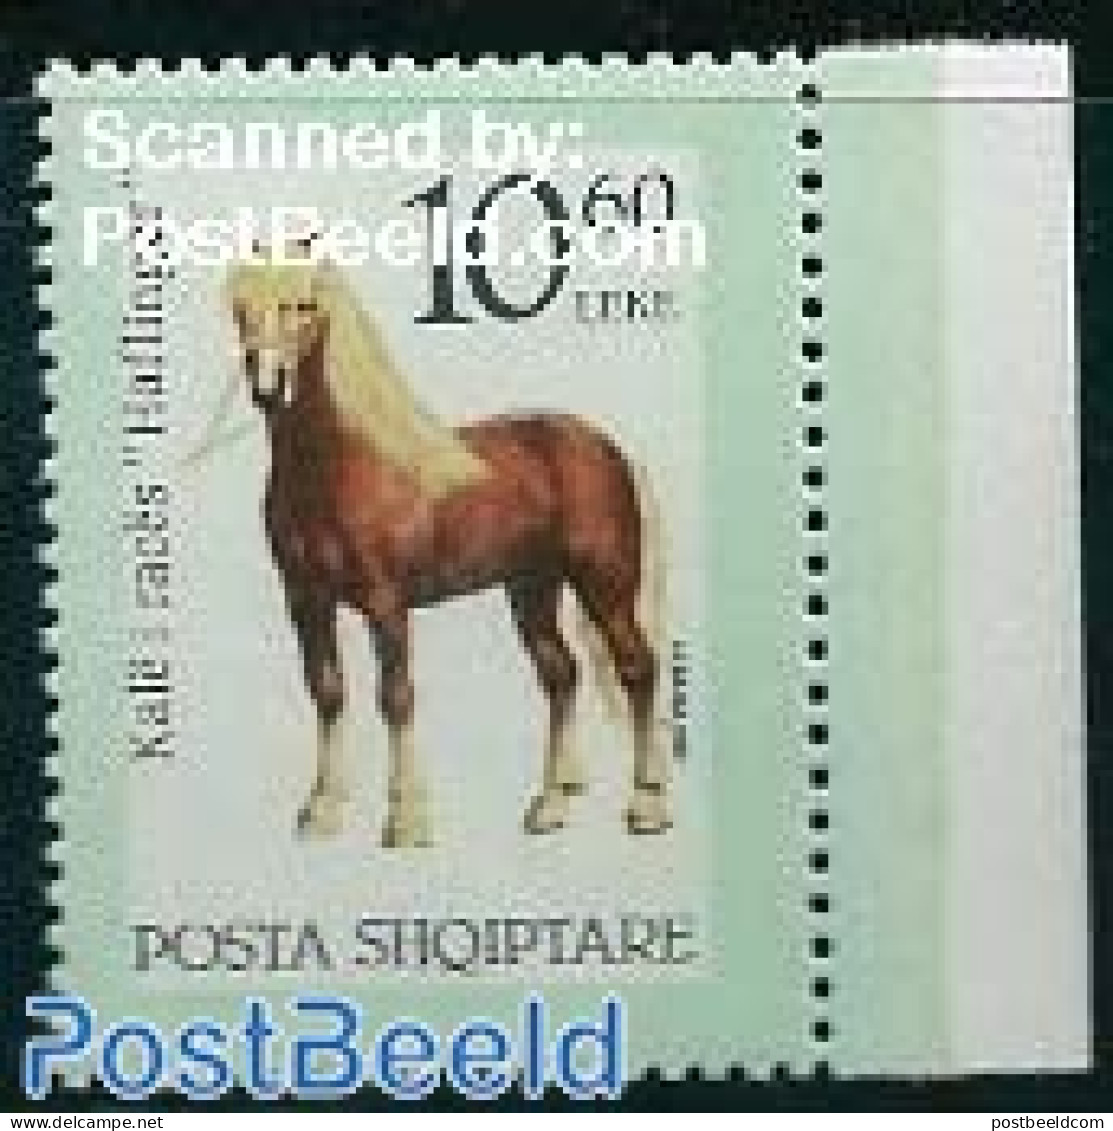 Albania 1992 Horses 1v, Green Cadre, Mint NH, Nature - Various - Horses - Errors, Misprints, Plate Flaws - Fouten Op Zegels